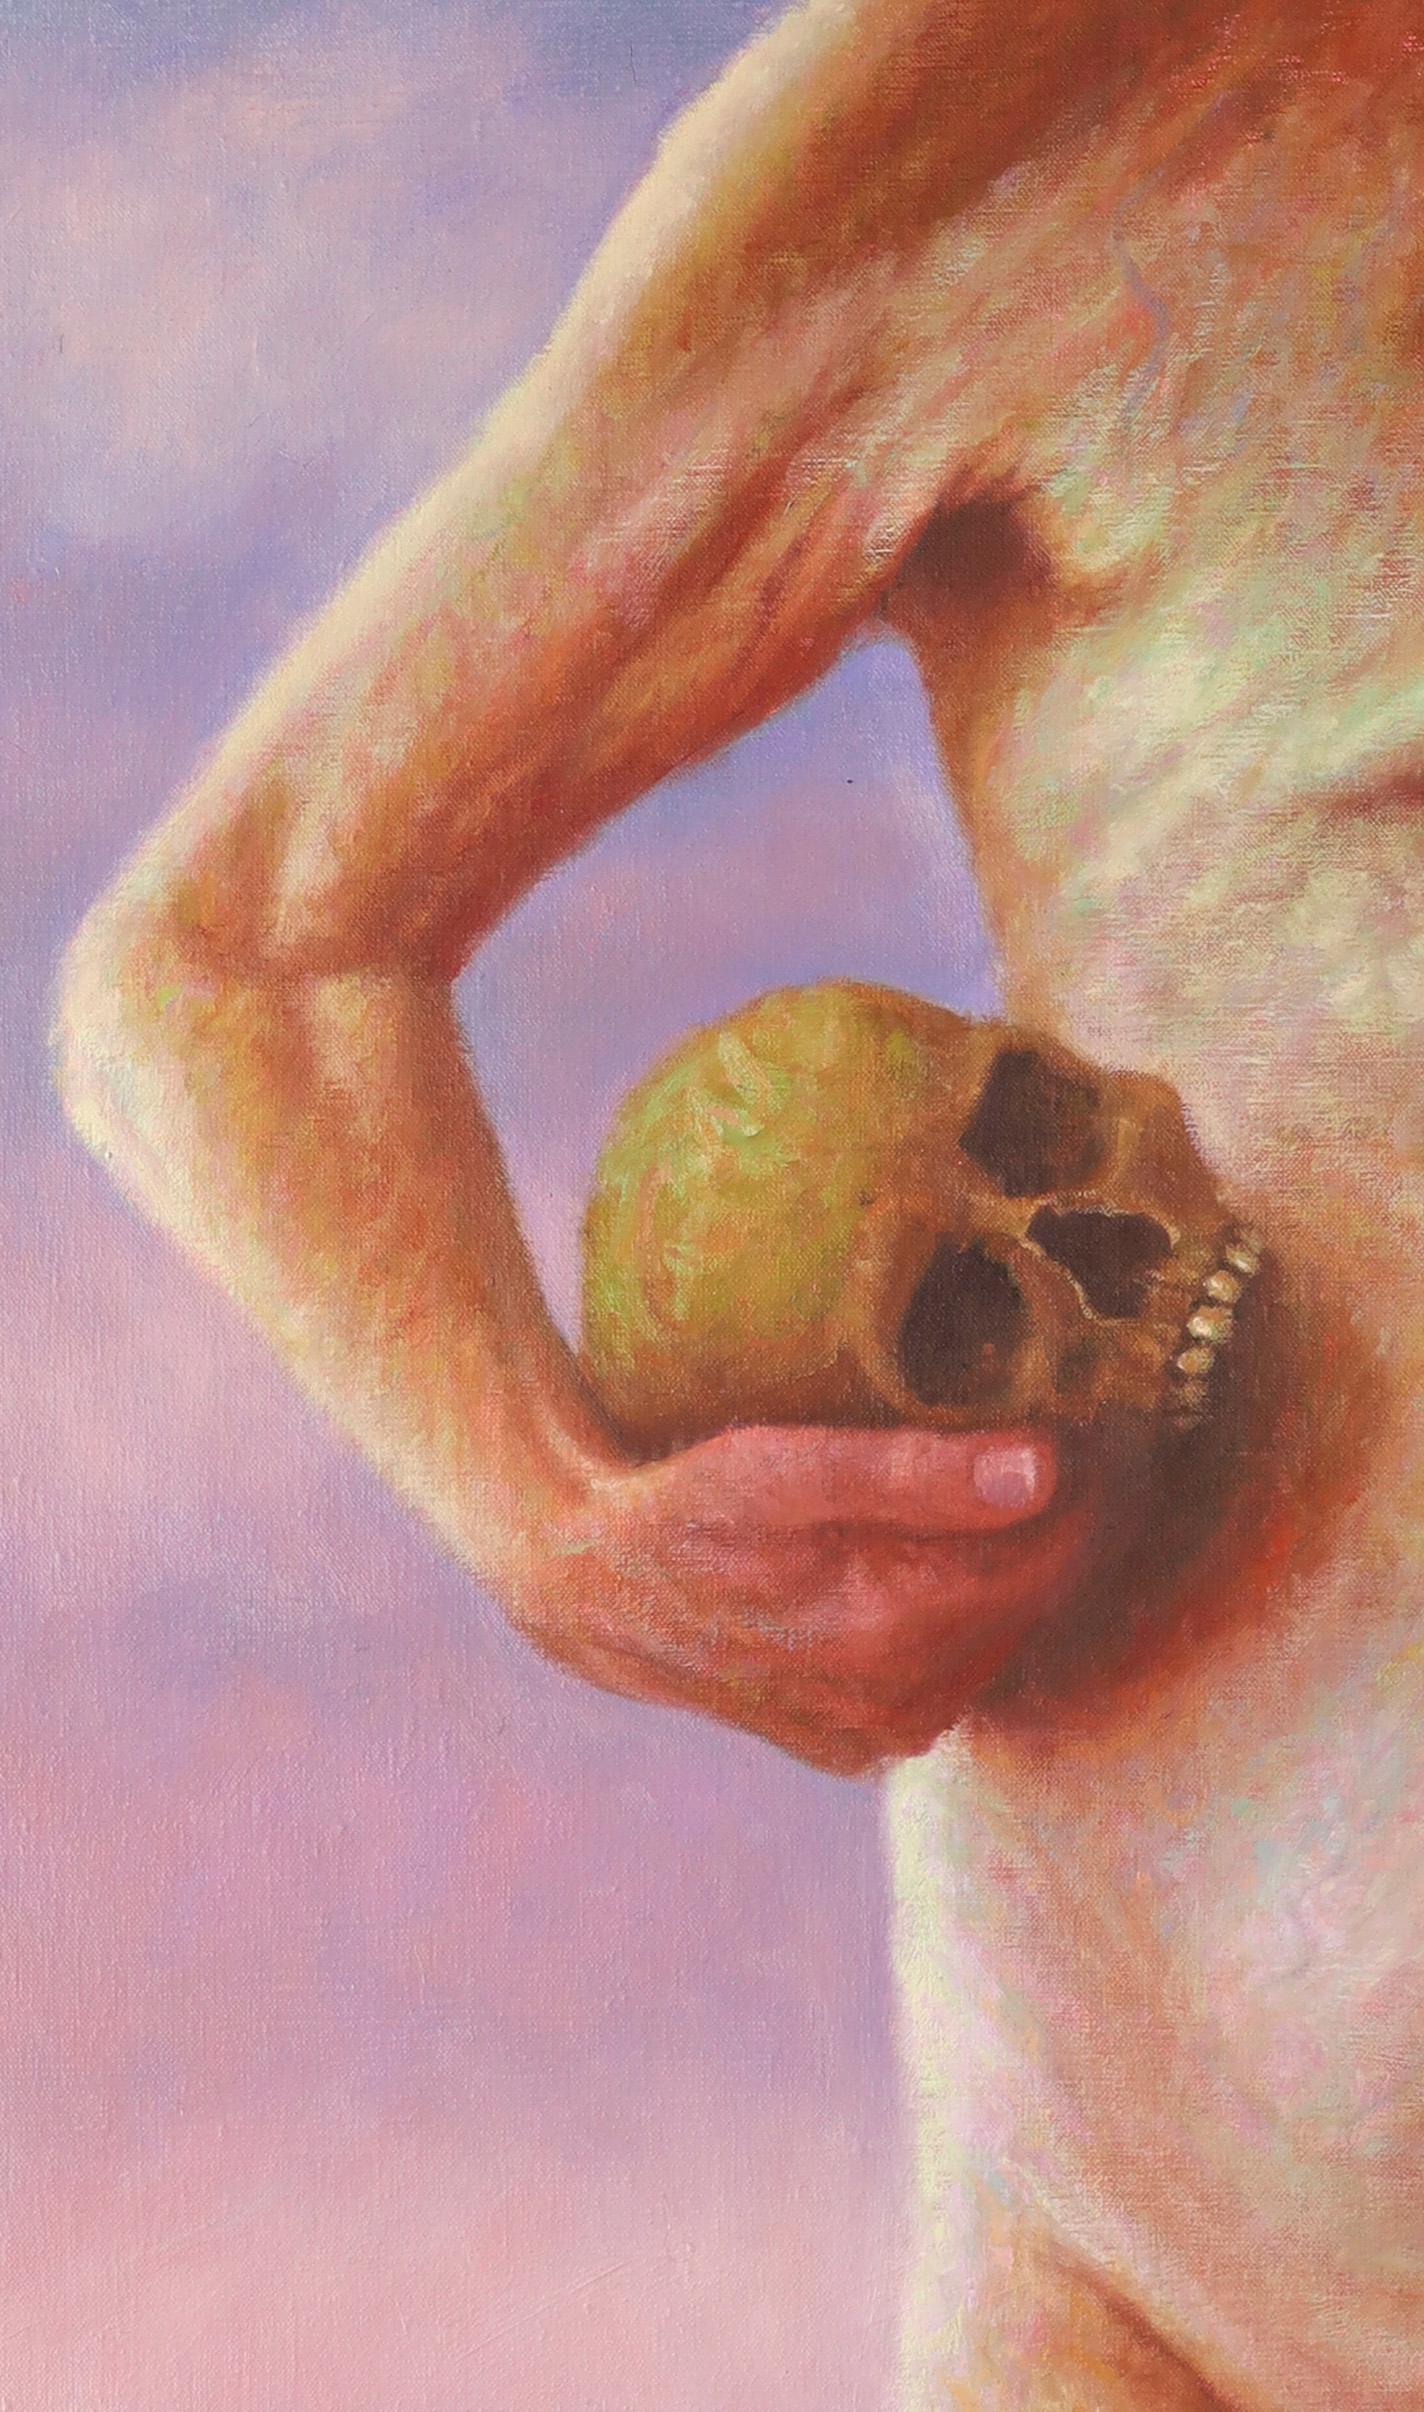  Die Künstlerin Francien Krieg beschreibt ihre Vision über ihre Arbeit 
Die Wahrheit ist, dass ich mich selbst male ... und damit den Kampf meines eigenen Körpers mit dem Alter, meinen eigenen Ängsten und meiner Faszination für den Tod. 
 
Diese